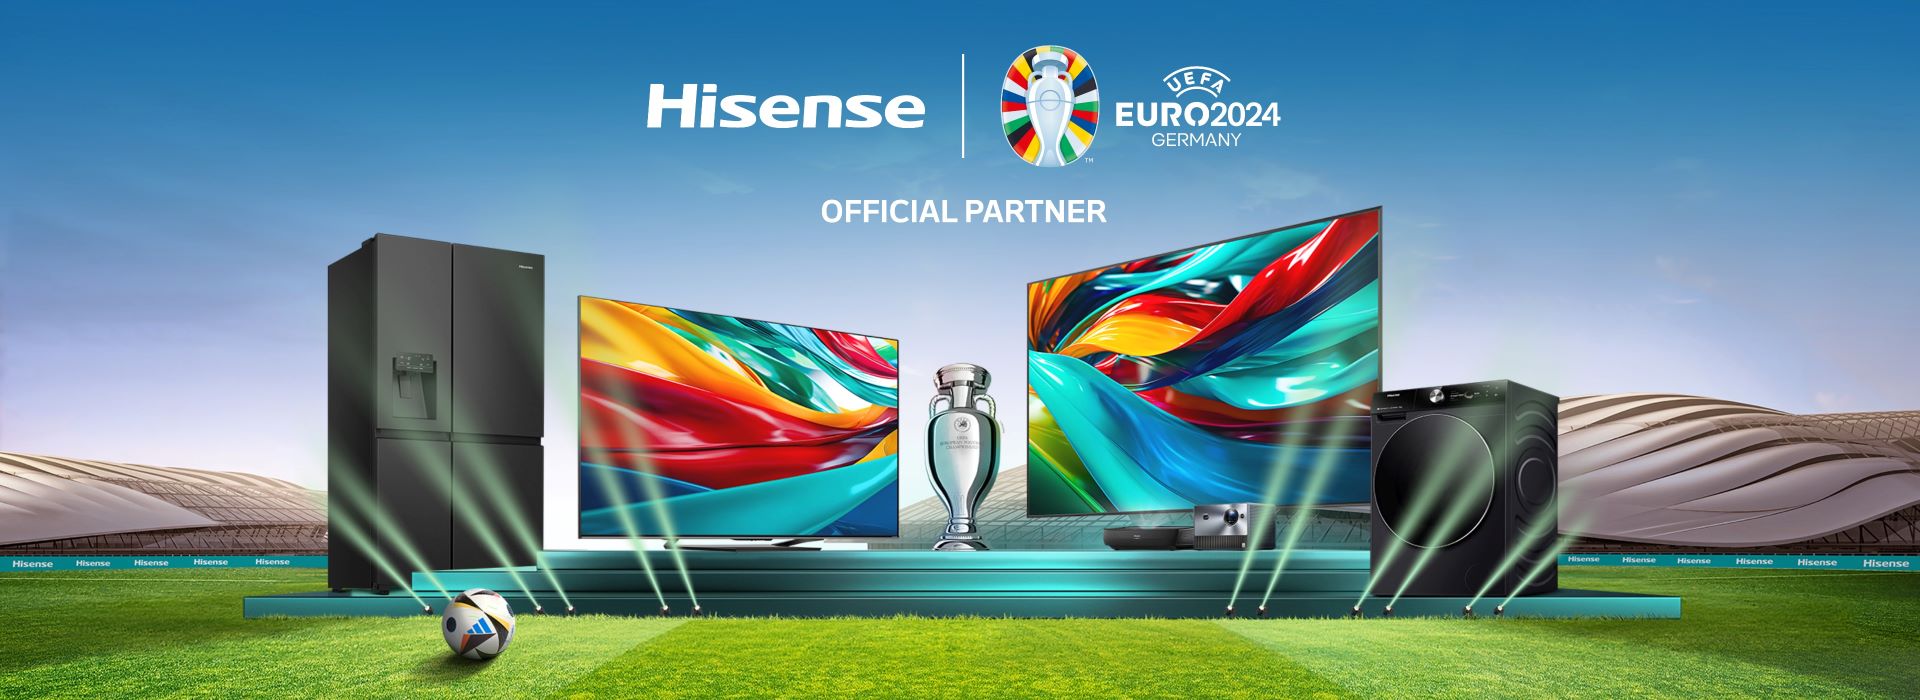 Hisense Nederland Official Partner EURO 2024 banner.jpg